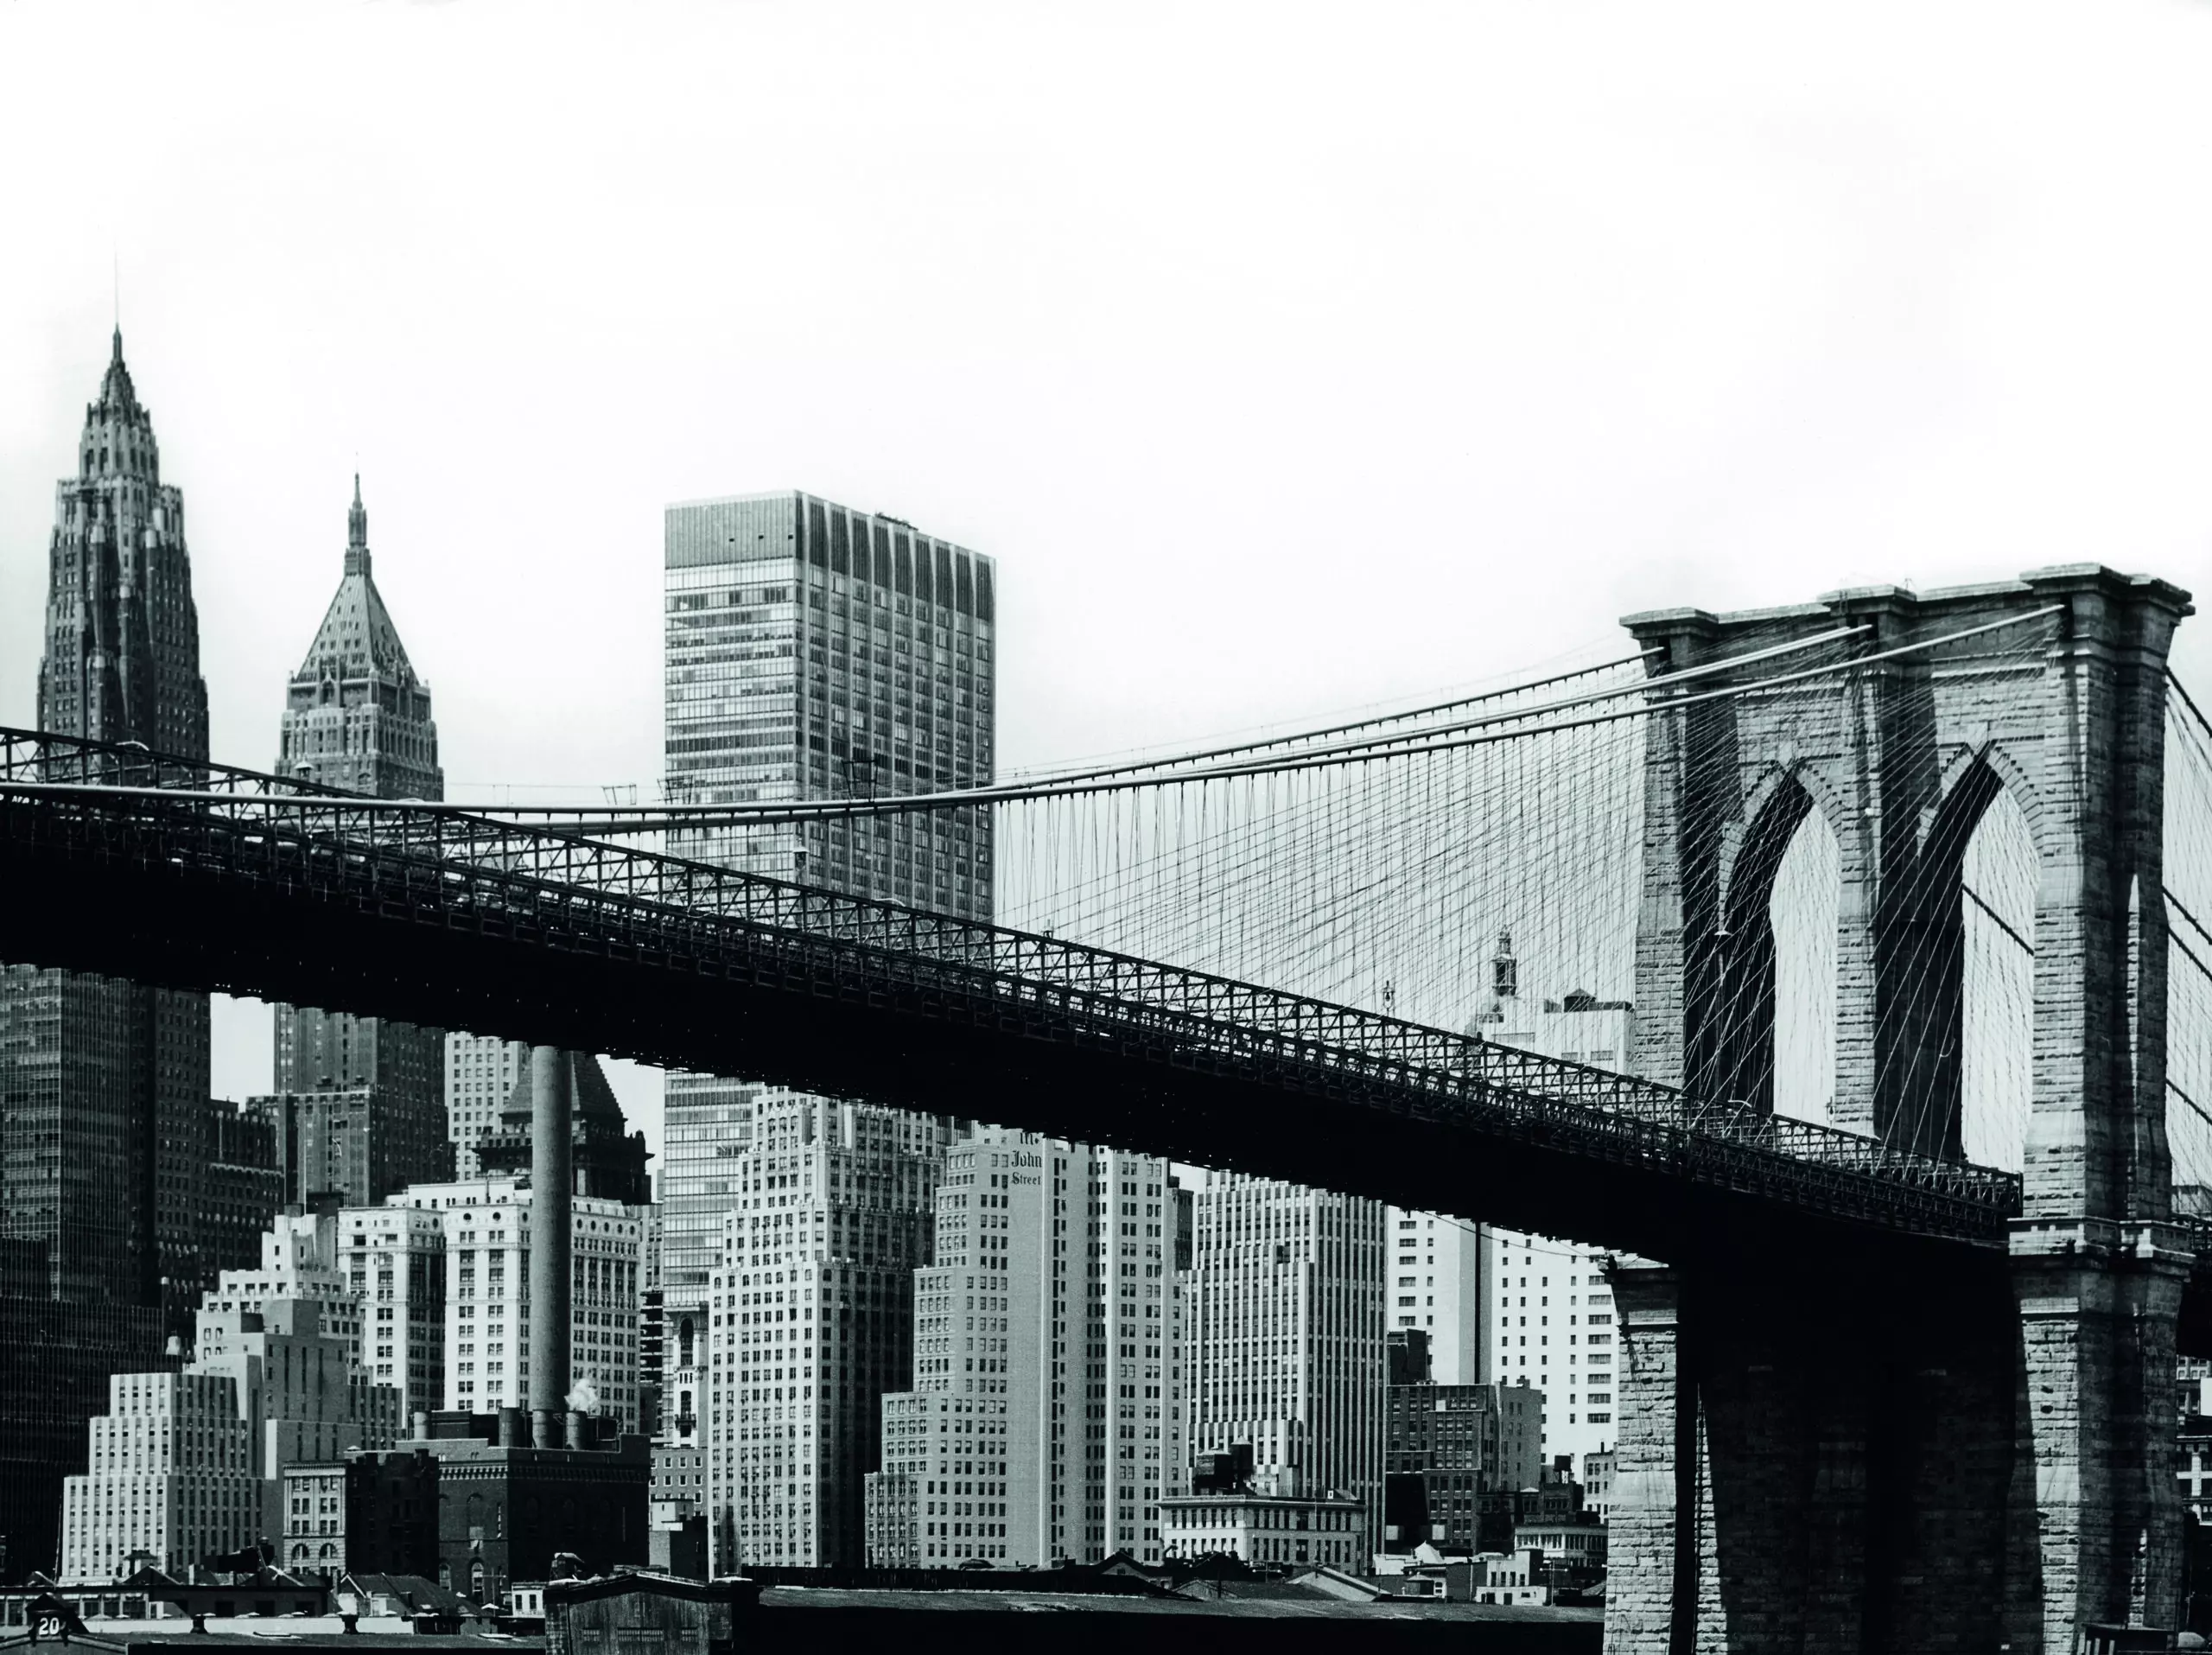 Wandbild (5065) Stanimirovitch, Dušan – NY Brooklynbridge 1950 präsentiert: Technik,Details und Strukturen,Architektur,Detailaufnahmen,Skylines,Sehenswürdigkeiten,Brücke,Architekturdetails